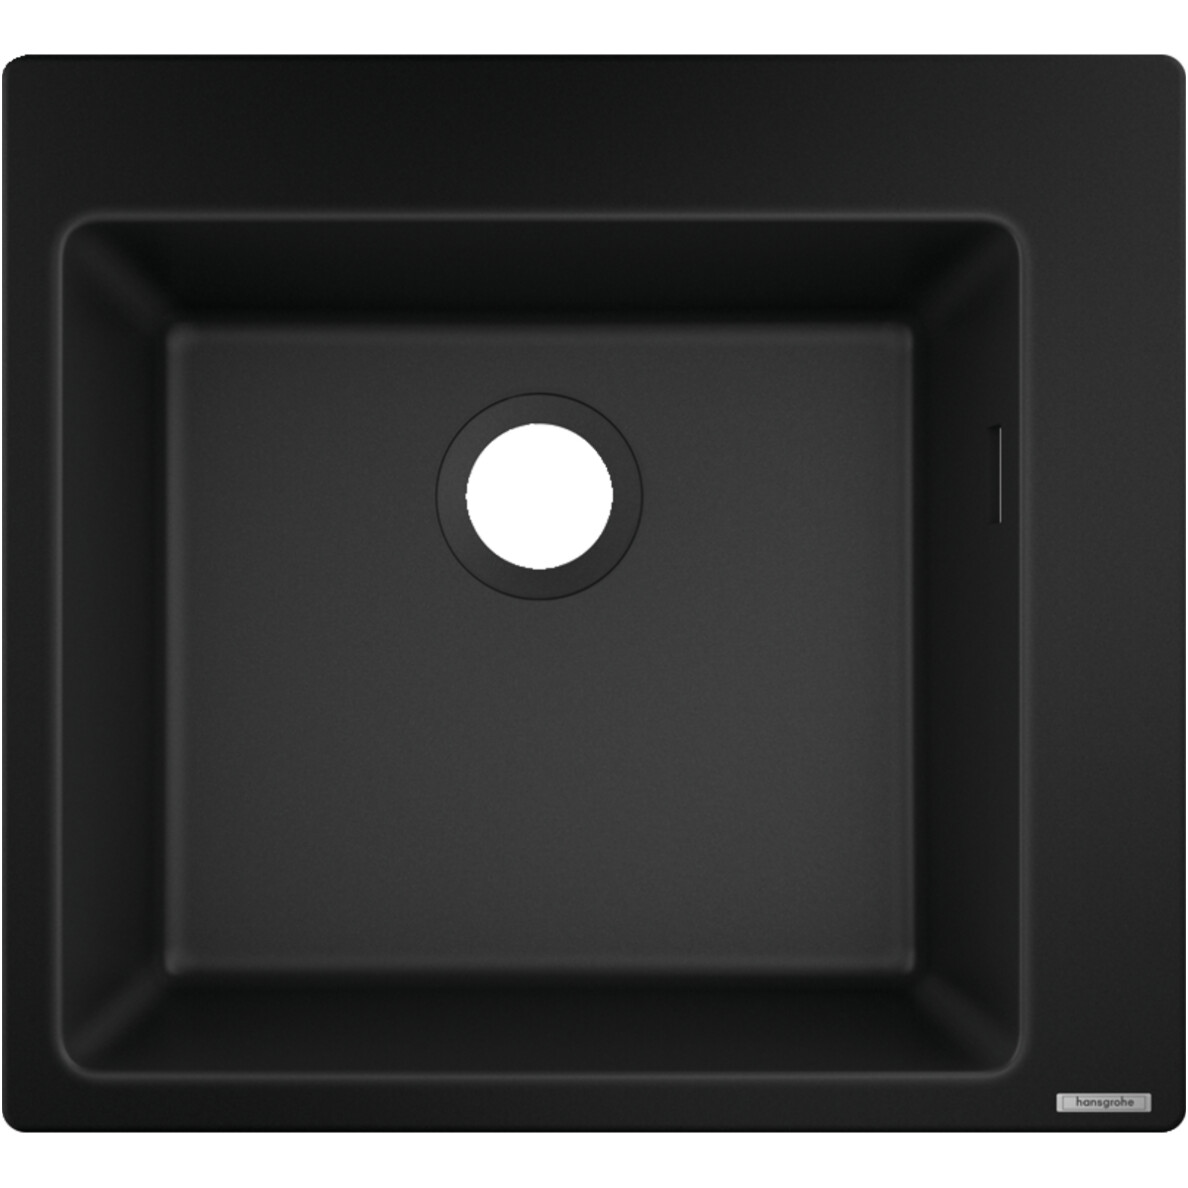 Évier de cuisine Hansgrohe encastré simple bac 45 cm sans égouttoir en noir graphite